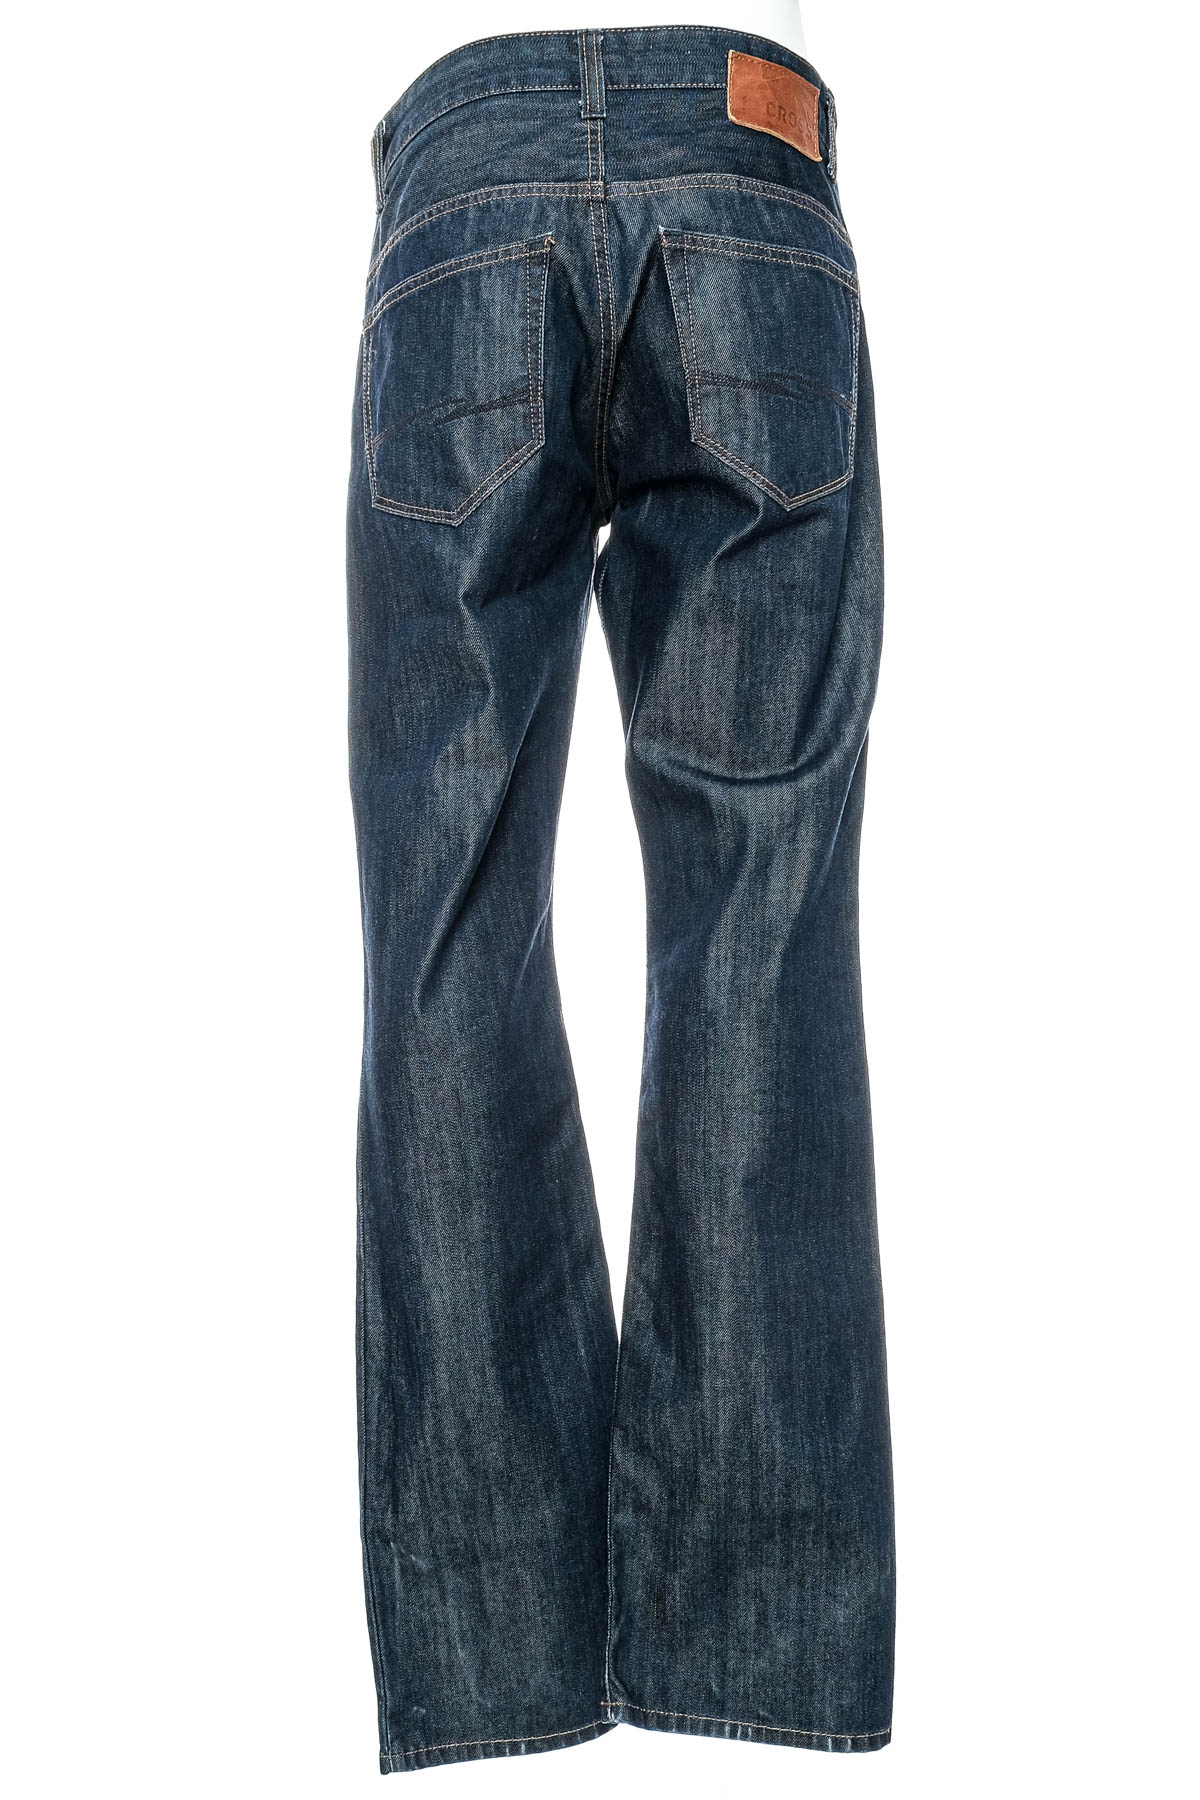 Men's jeans - Cross Jeans - 1